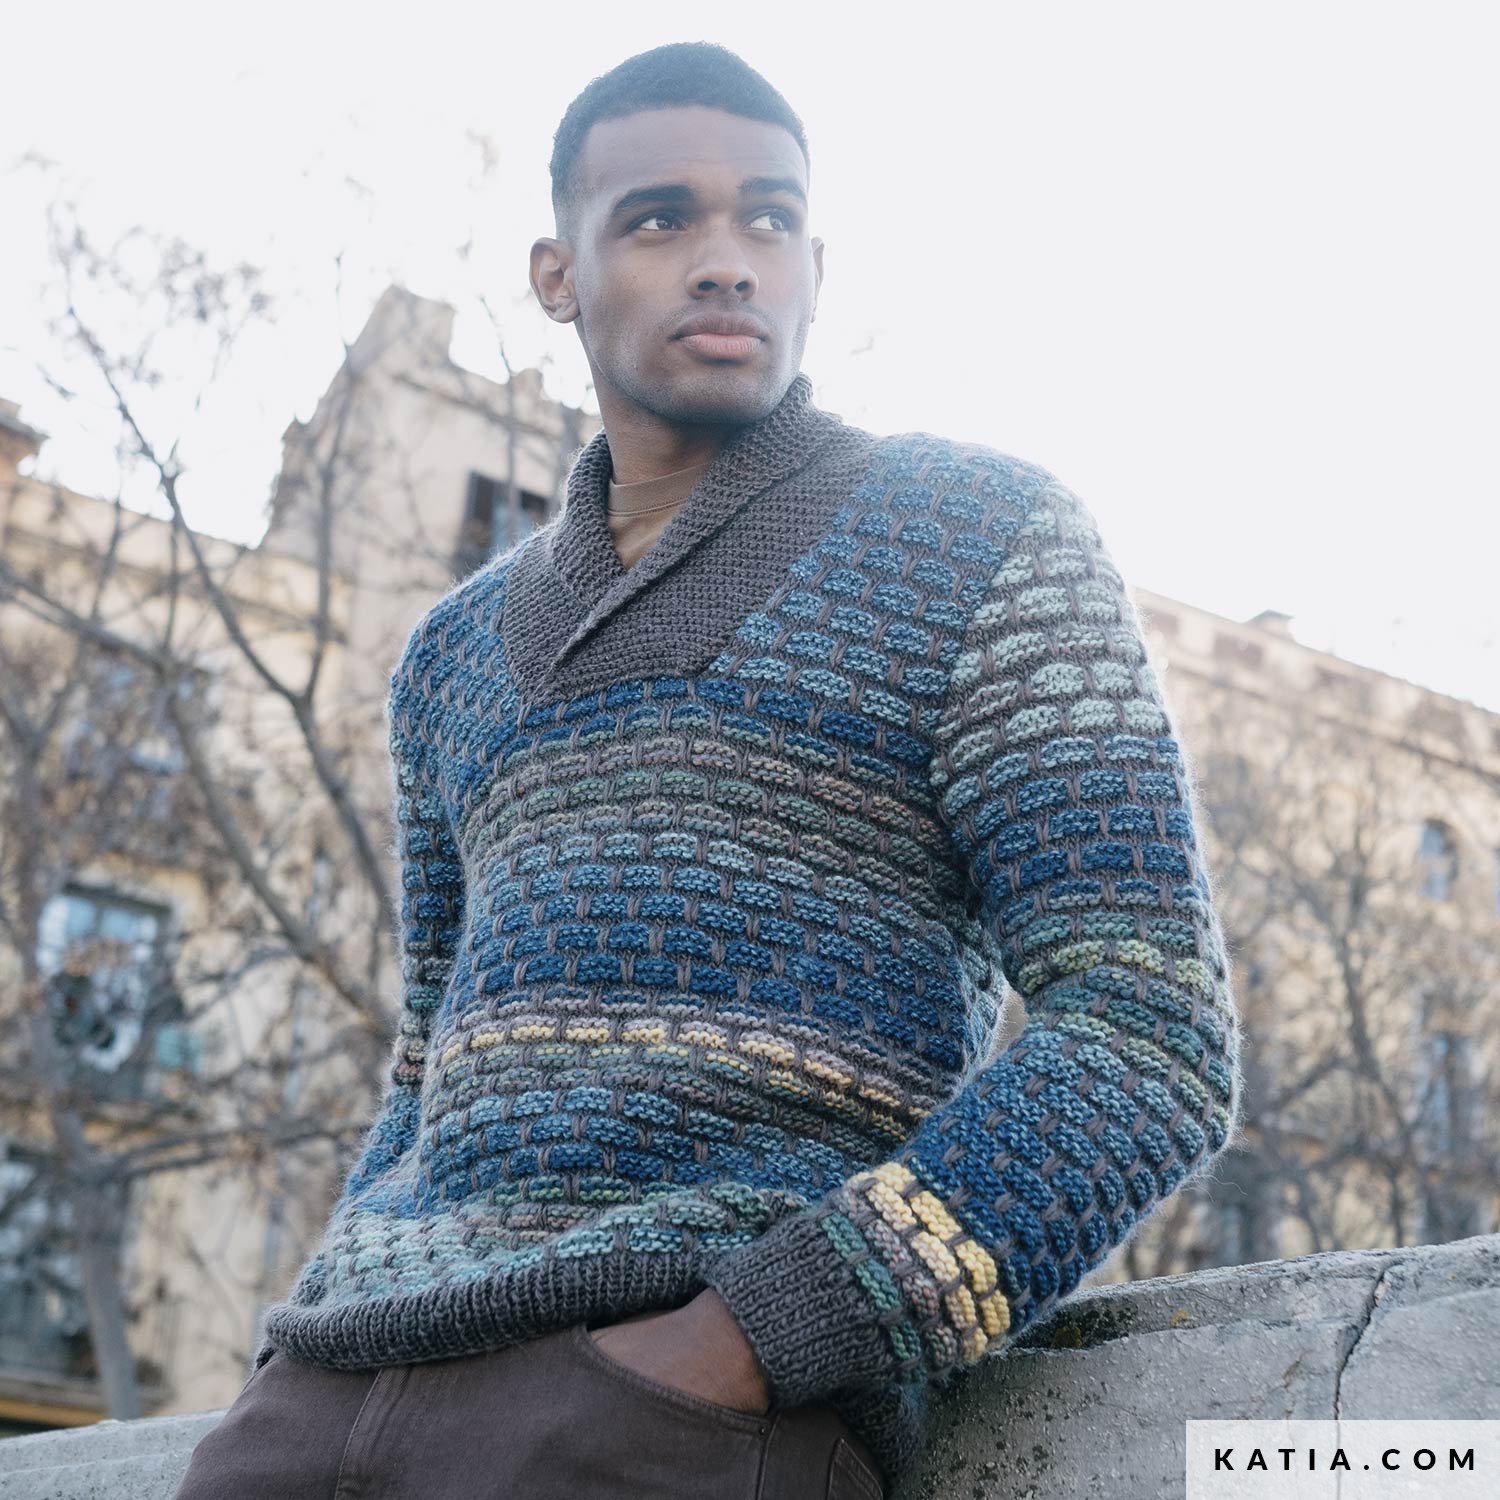 https://www.katia.com/files/mod/6266/pattern-knit-crochet-man-sweater-autumn-winter-katia-6266-26-g.jpg